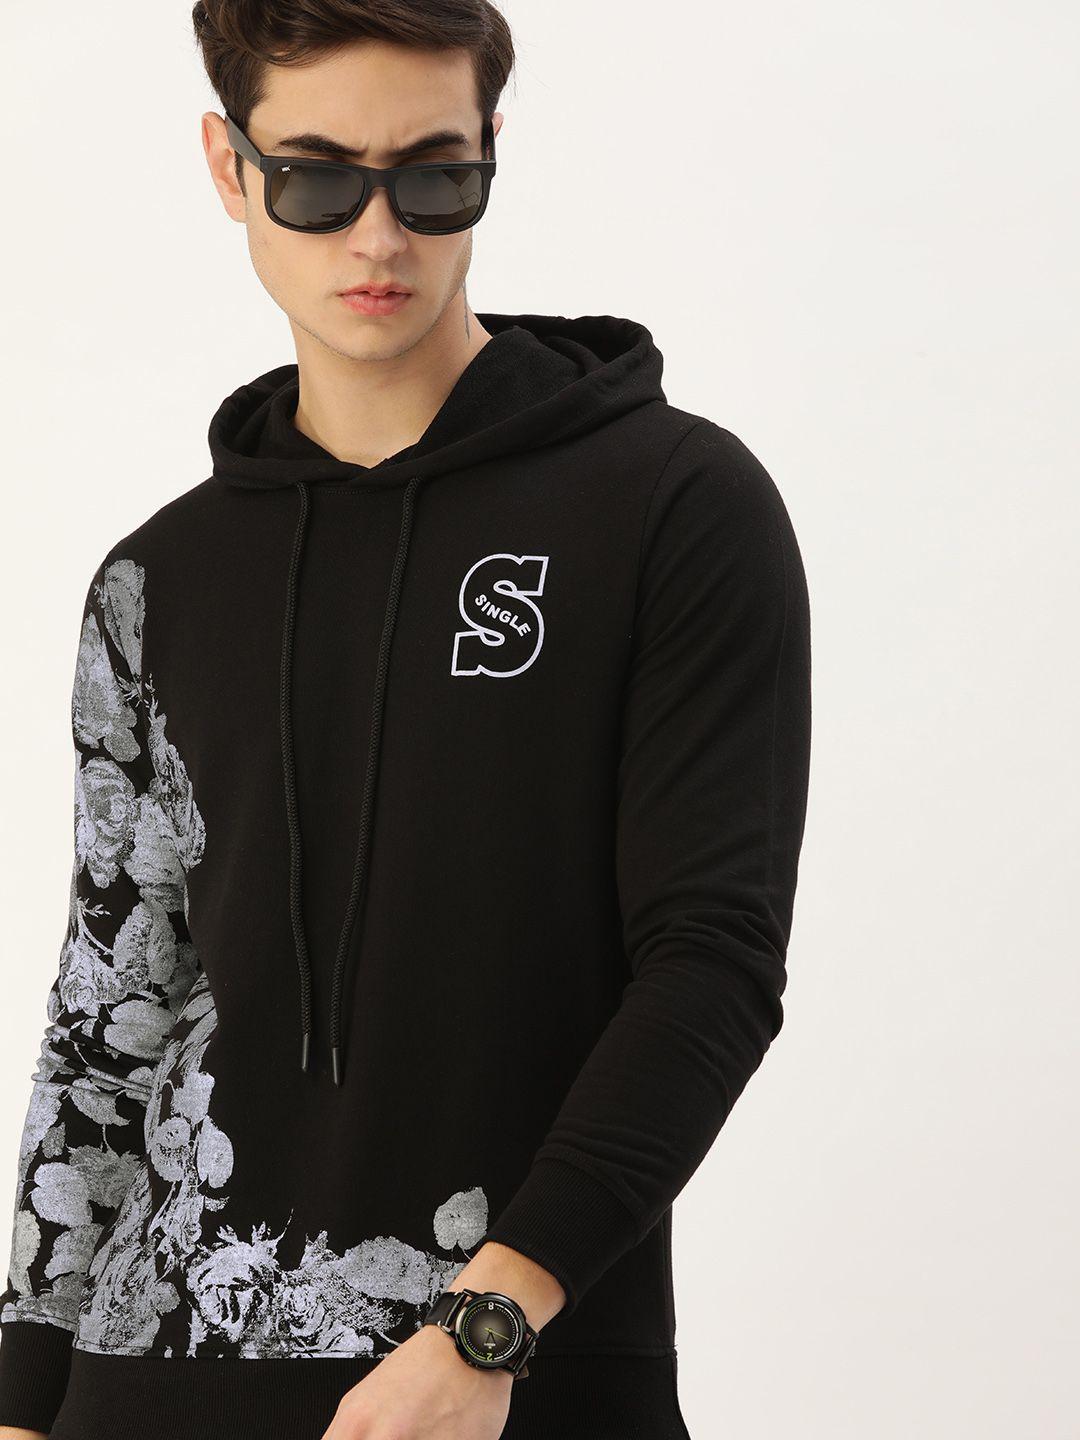 single men black floral printed hooded sweatshirt